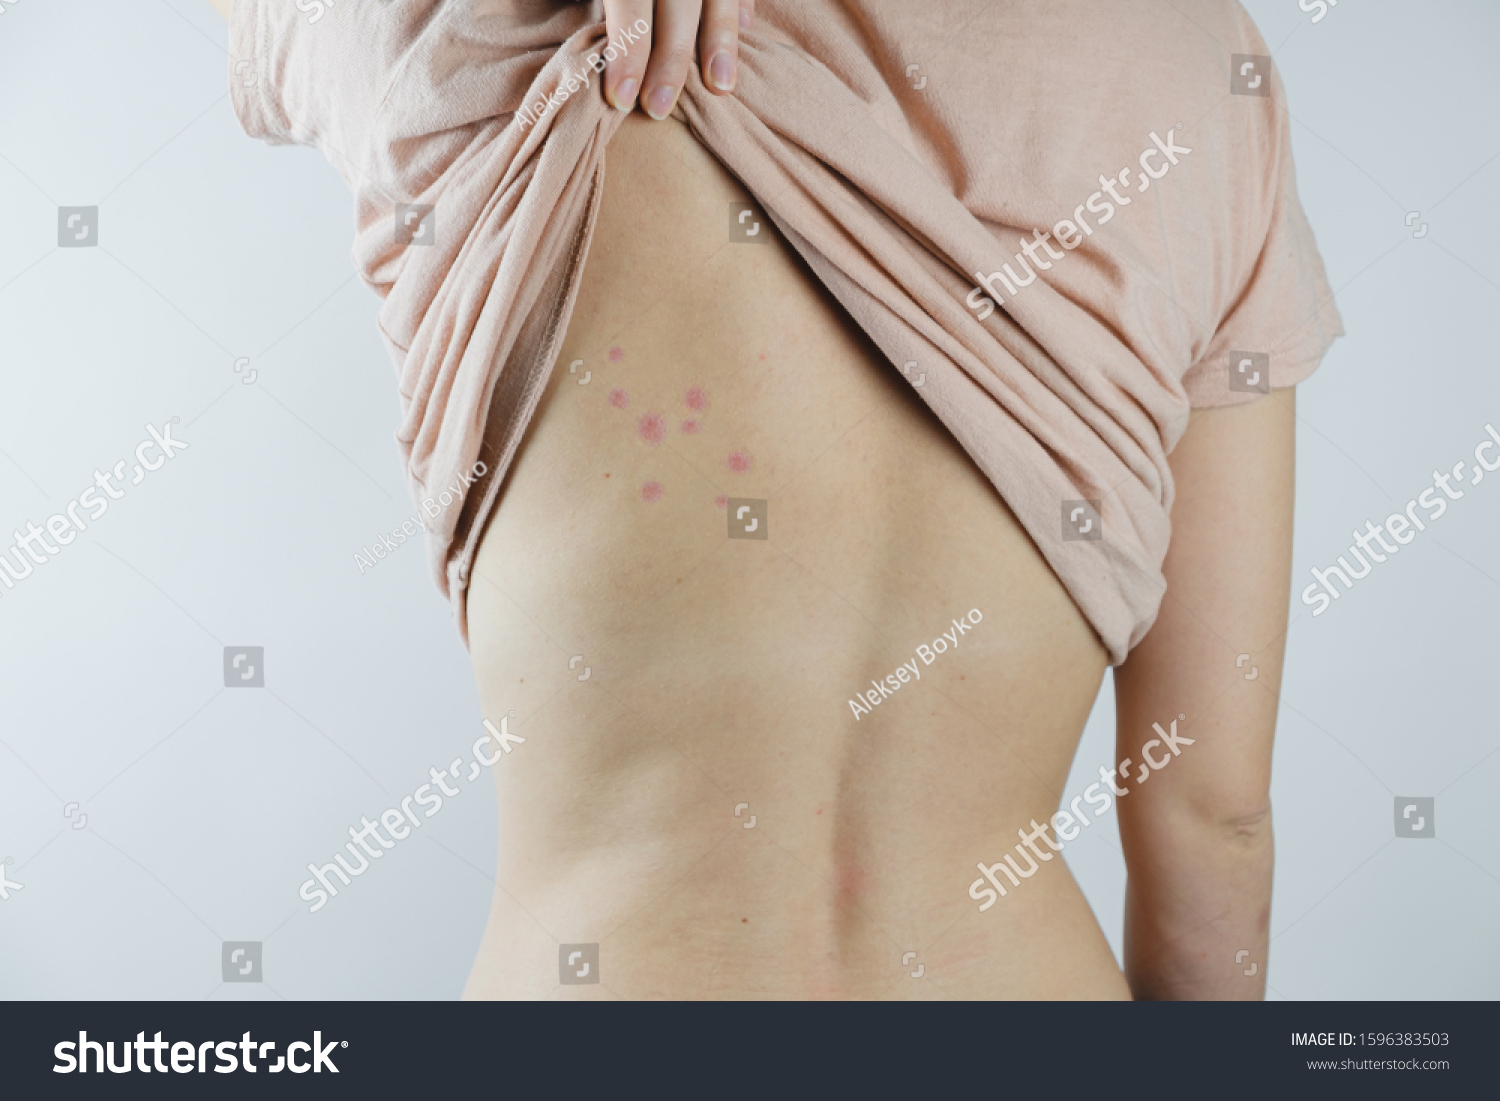 Damaged Skin On Females Back Bedbug Stock Photo Edit Now 1596383503